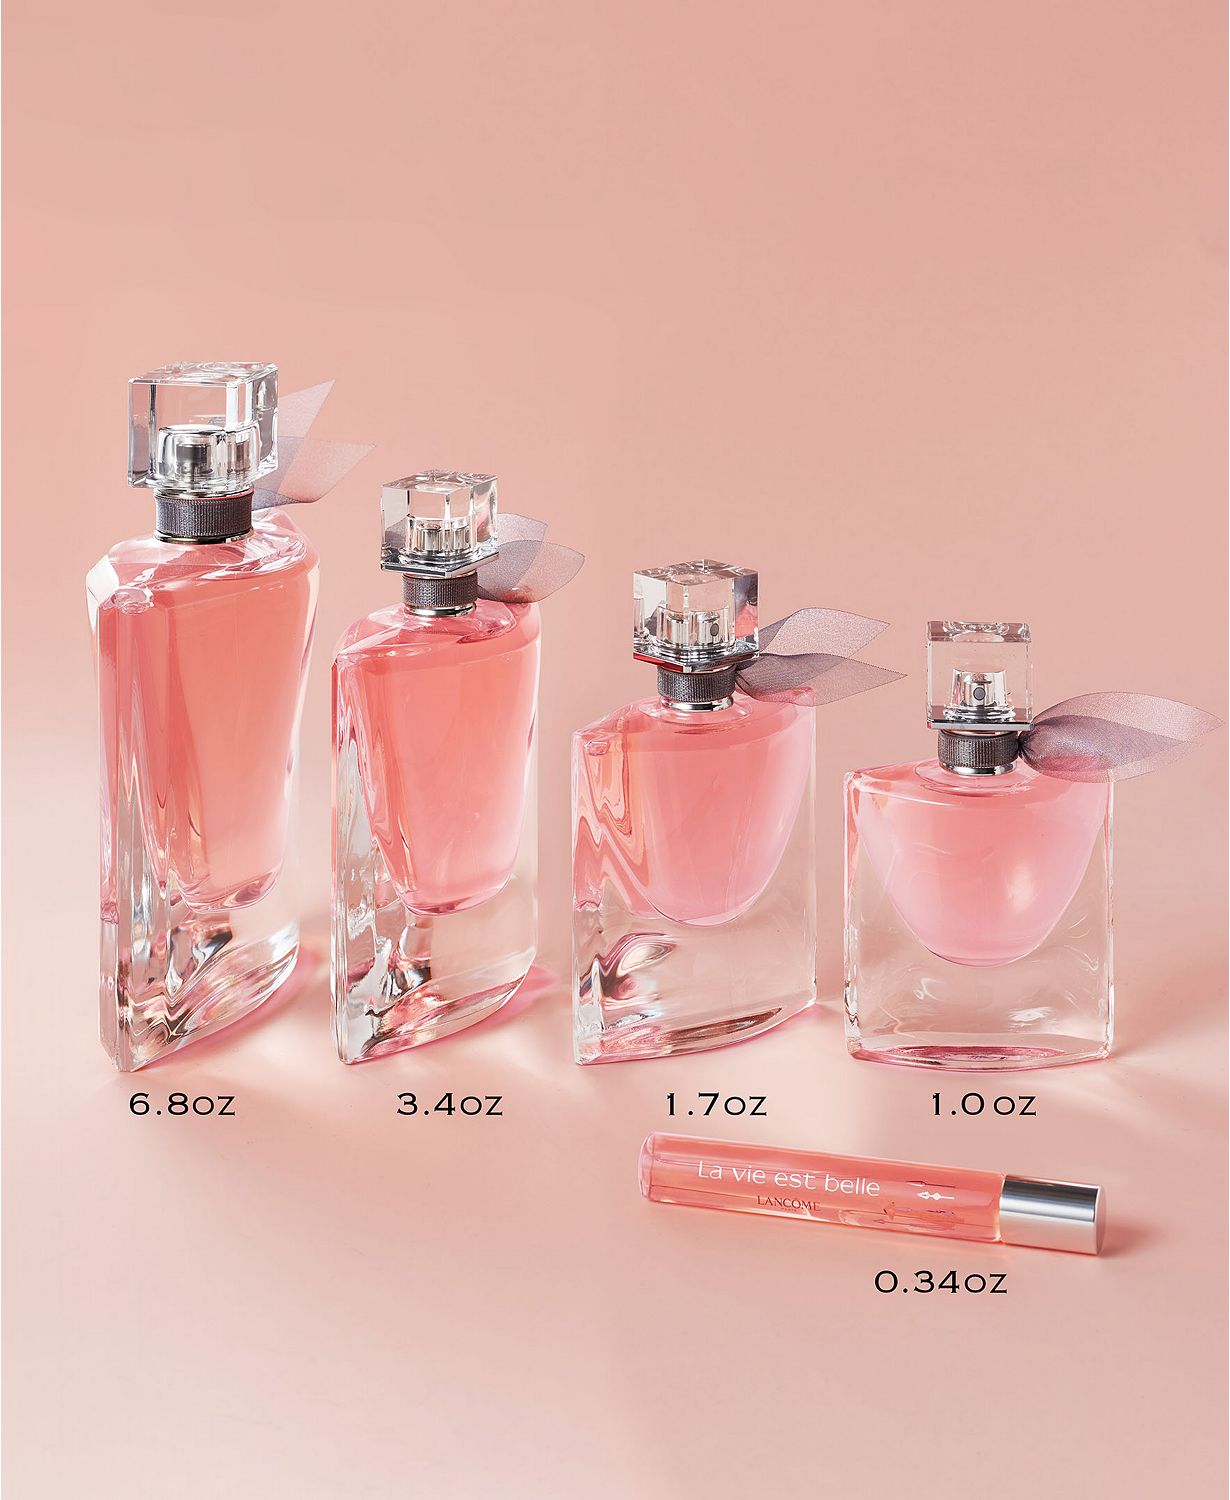 La vie est belle Eau de Parfum Women's Fragrance Refillable, 1 oz.